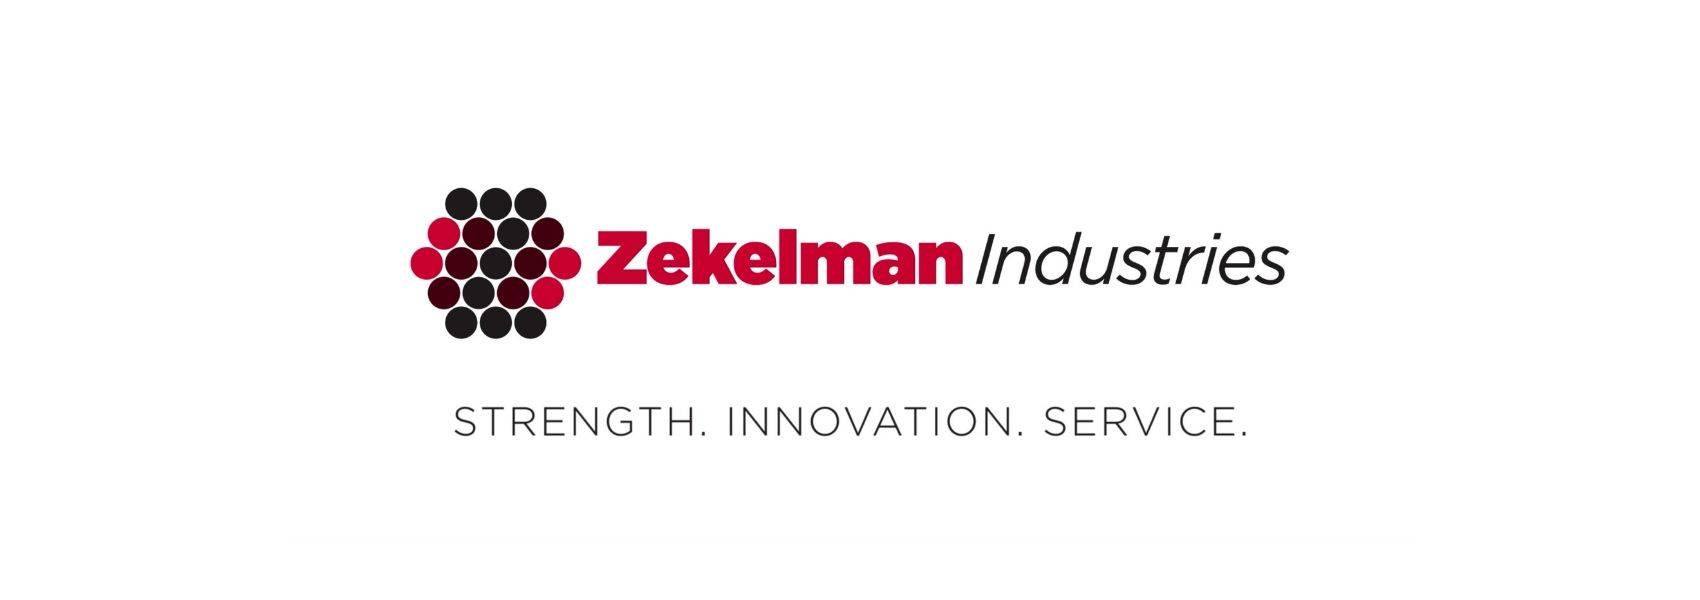 zekelman industries